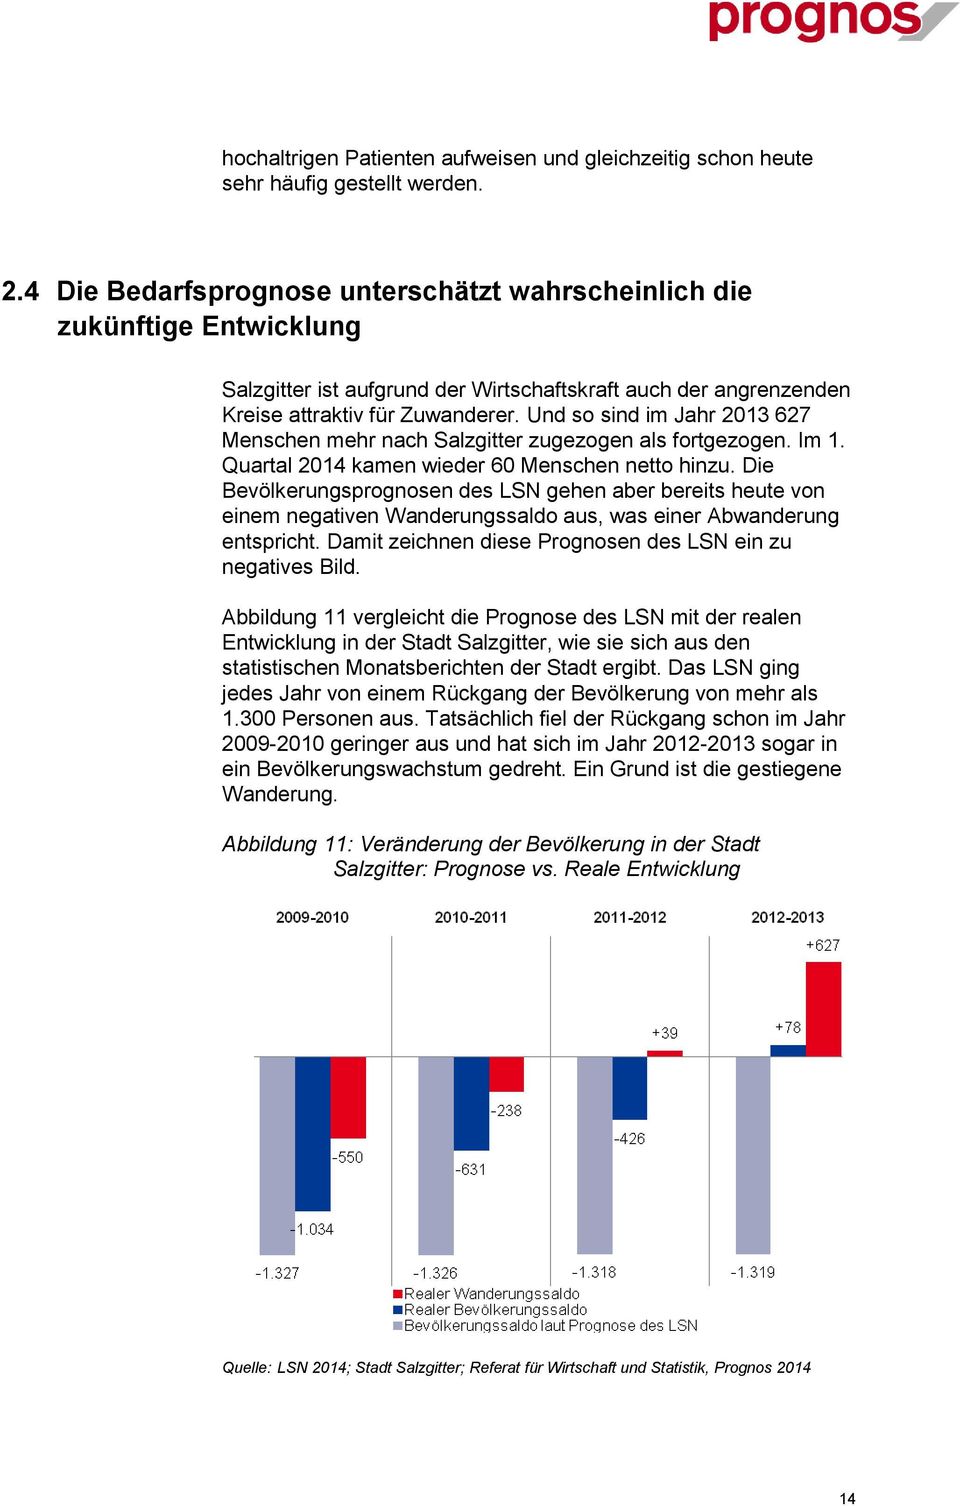 Und so sind im Jahr 2013 627 Menschen mehr nach Salzgitter zugezogen als fortgezogen. Im 1. Quartal 2014 kamen wieder 60 Menschen netto hinzu.